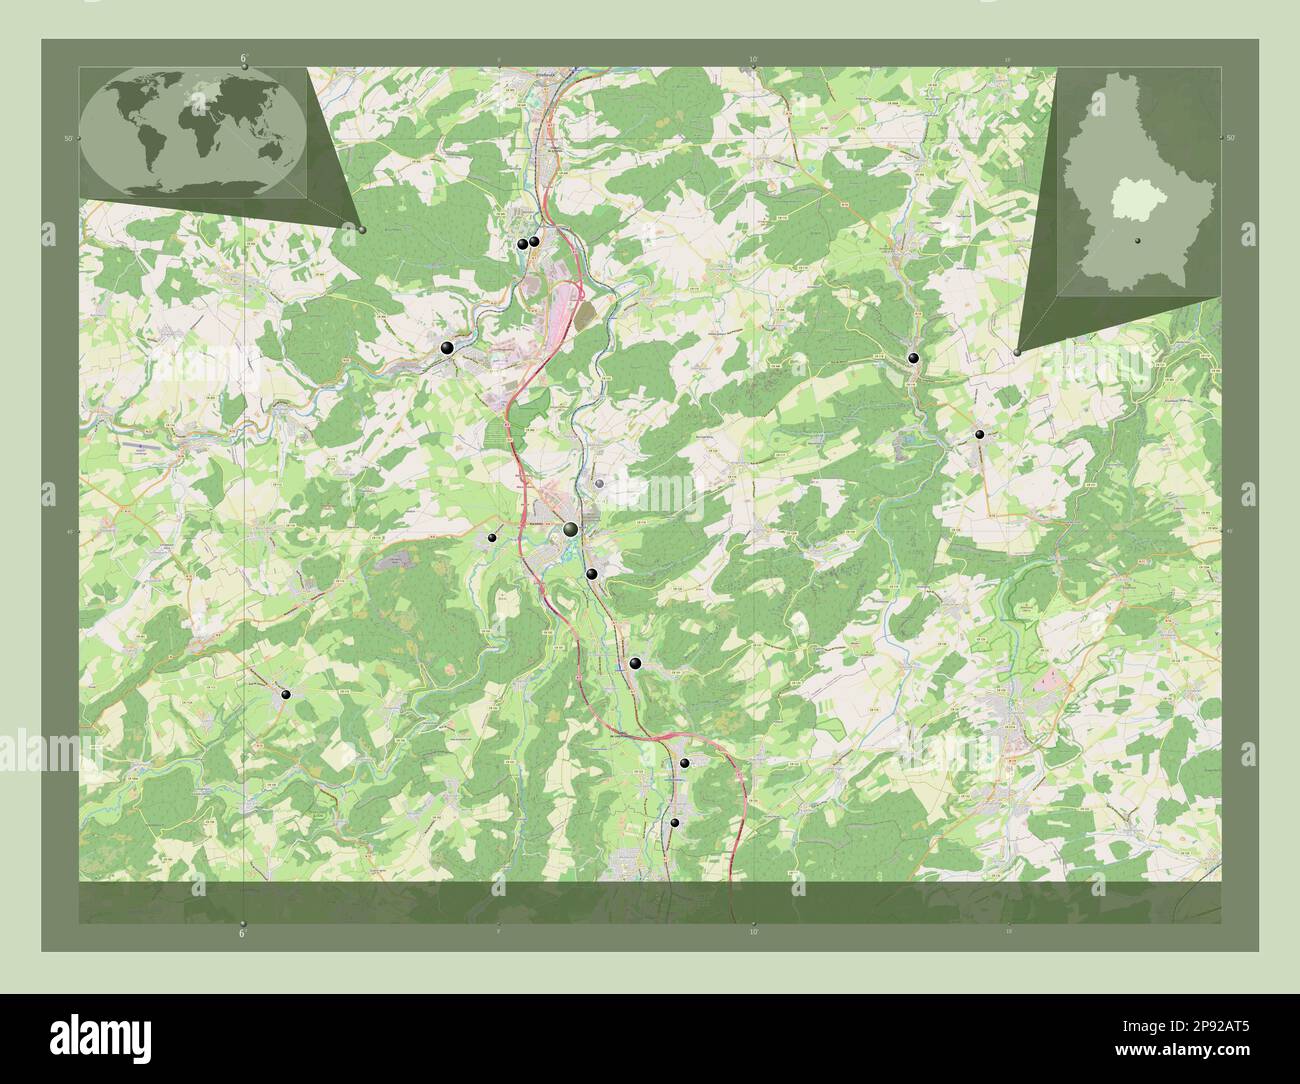 Canton de Luxembourg. Ouvrez la carte des rues. Lieux des principales villes de la région. Cartes d'emplacement auxiliaire d'angle Banque D'Images